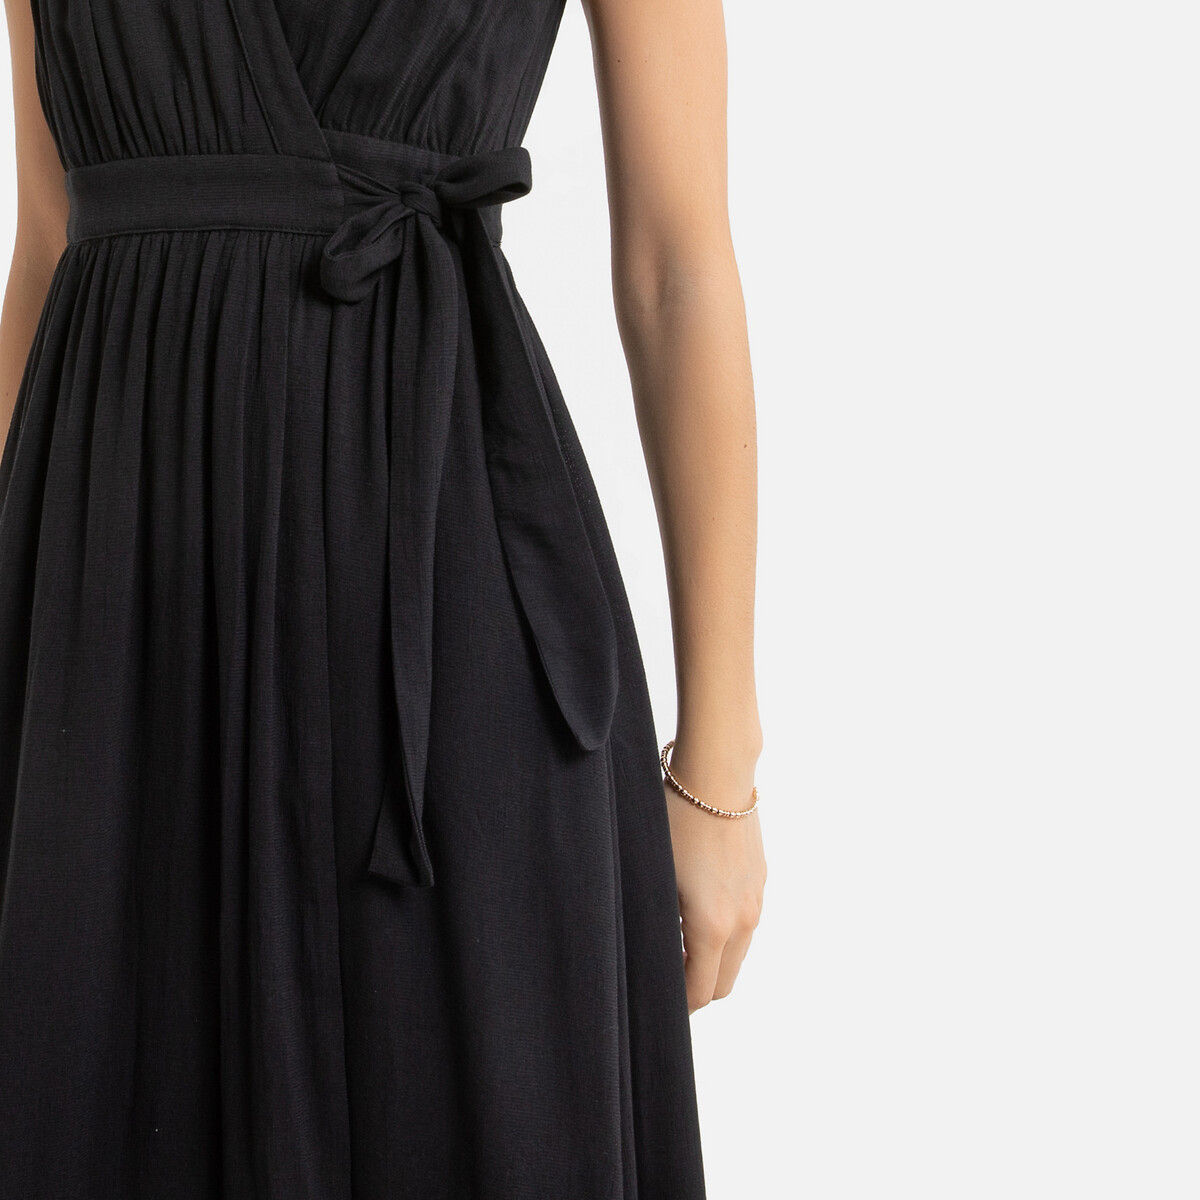 Платье-миди LaRedoute Без рукавов V-образный вырез 2(M) черный, размер 2(M) Без рукавов V-образный вырез 2(M) черный - фото 3